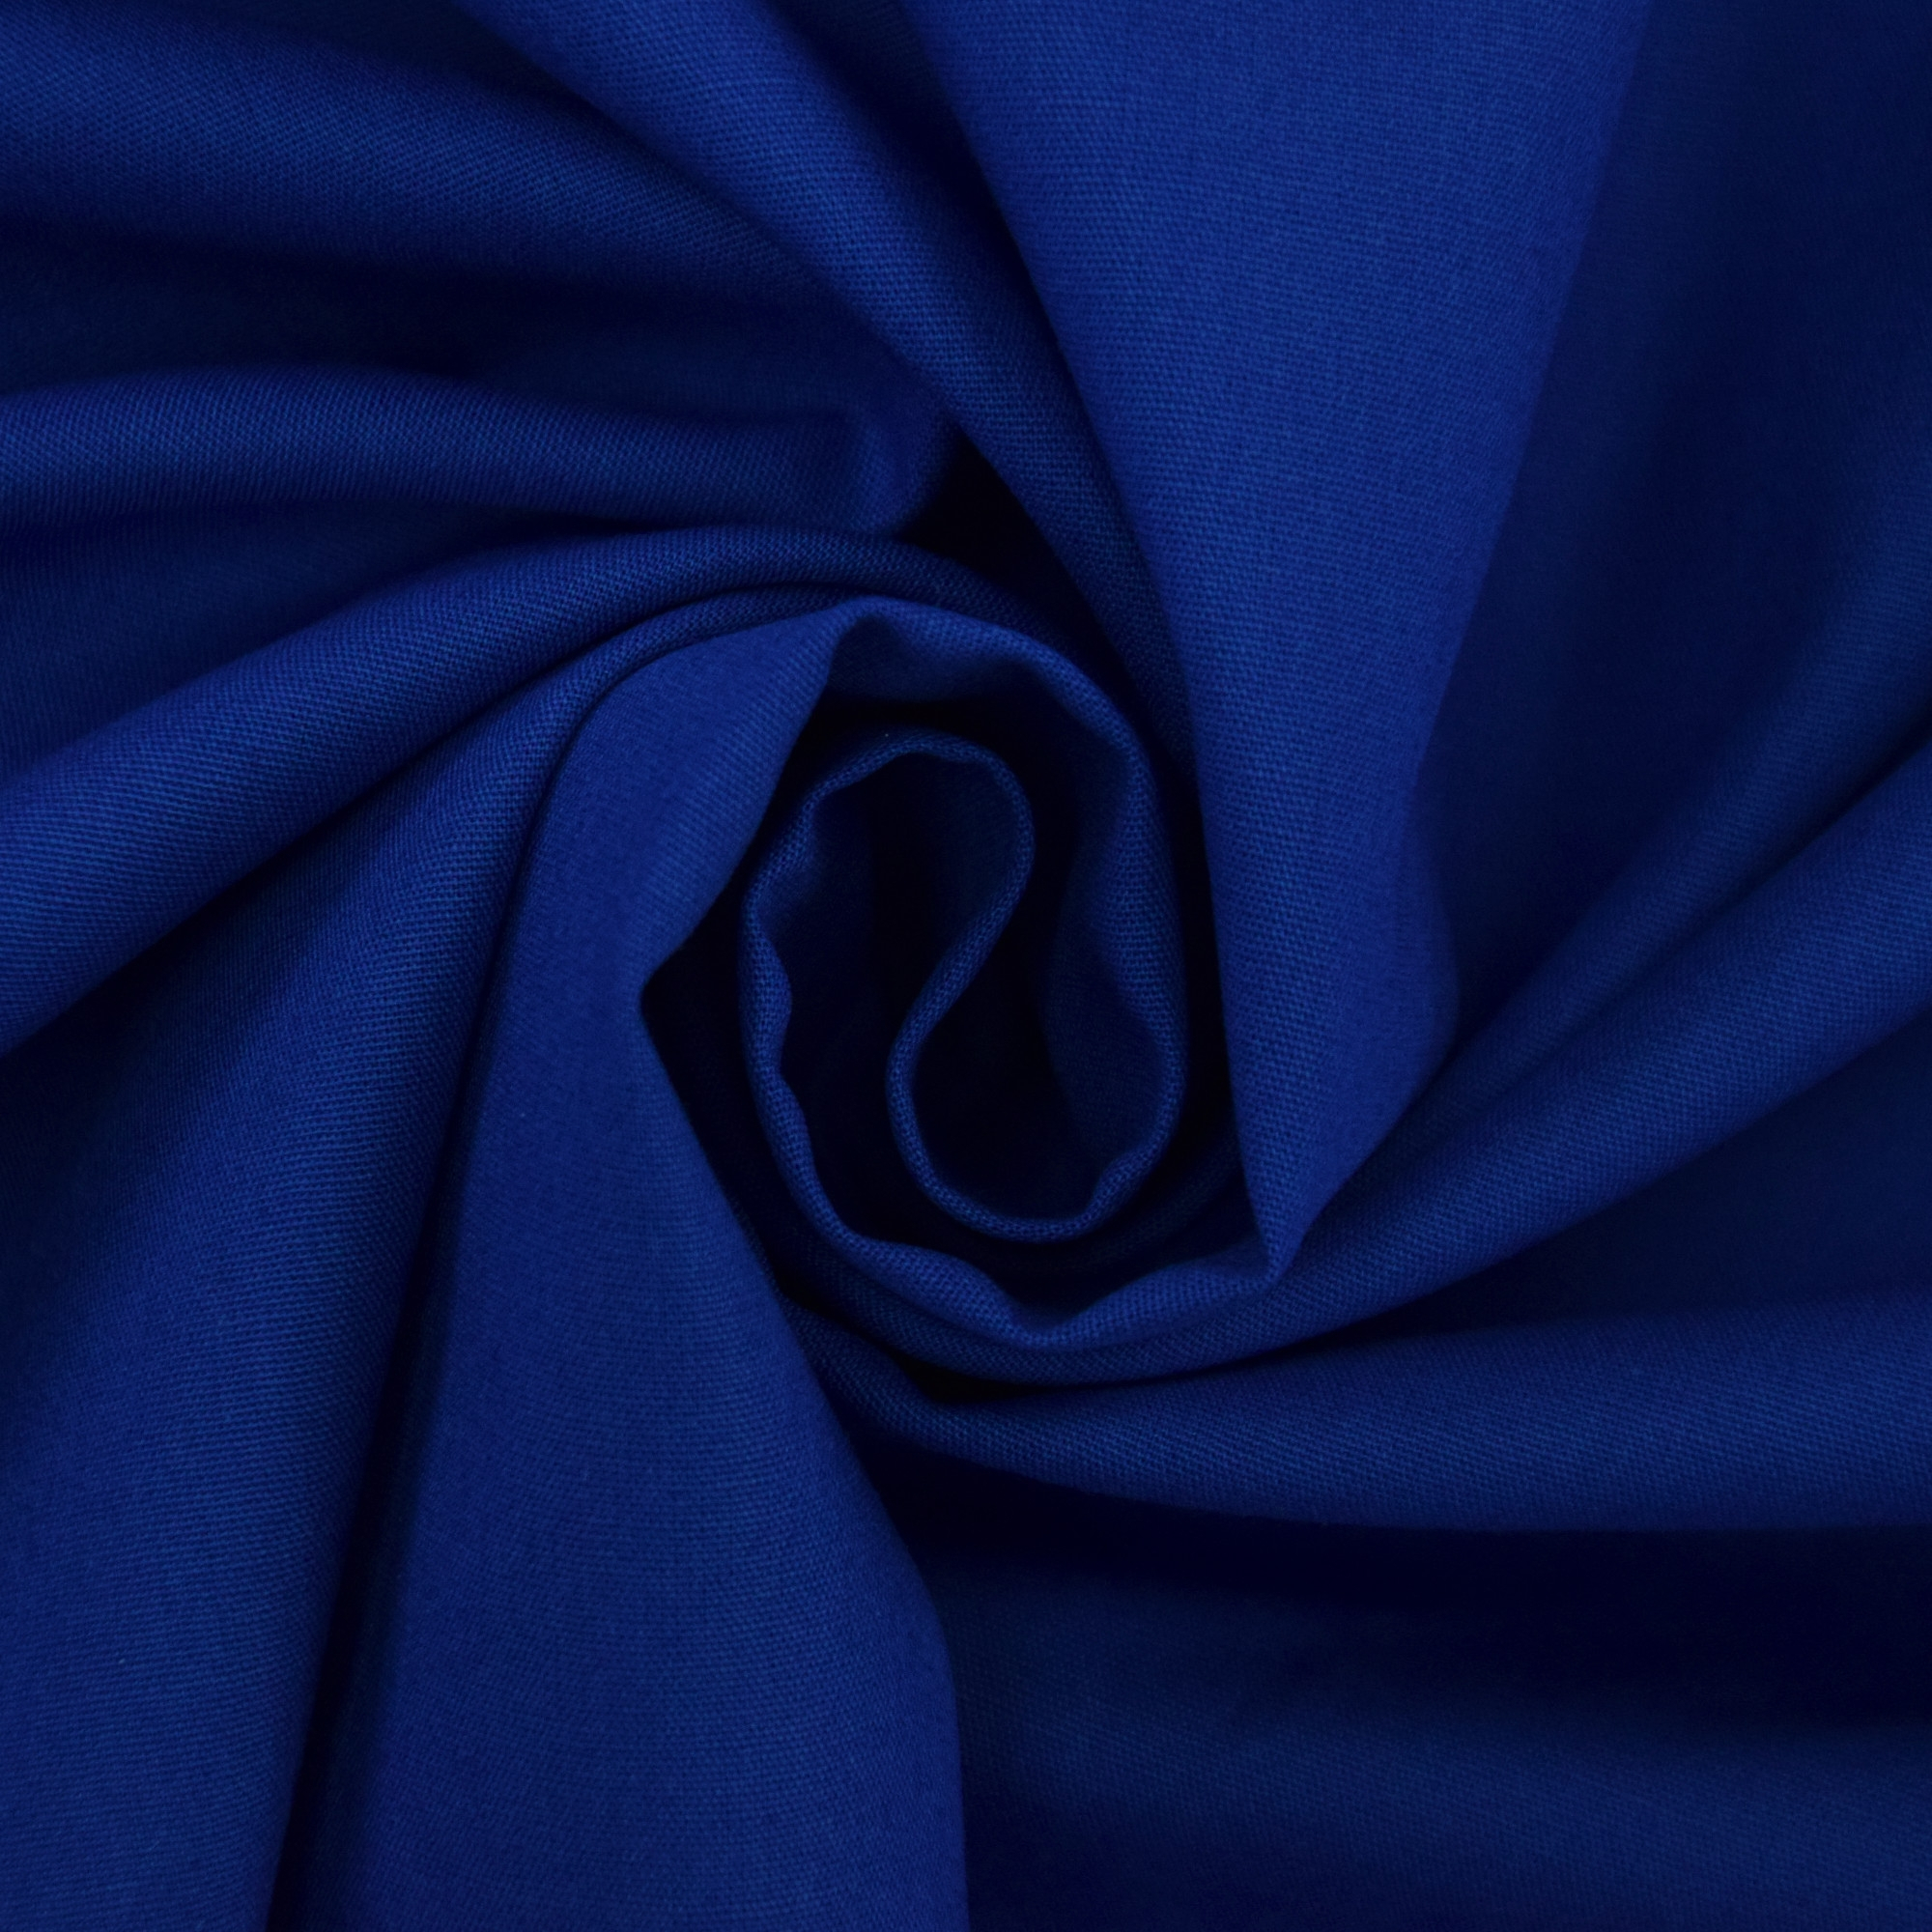 0,5m MIRABLAU DESIGN Stoffverkauf Baumwolle Popeline Dreiecke orange blau auf creme 4-157M 